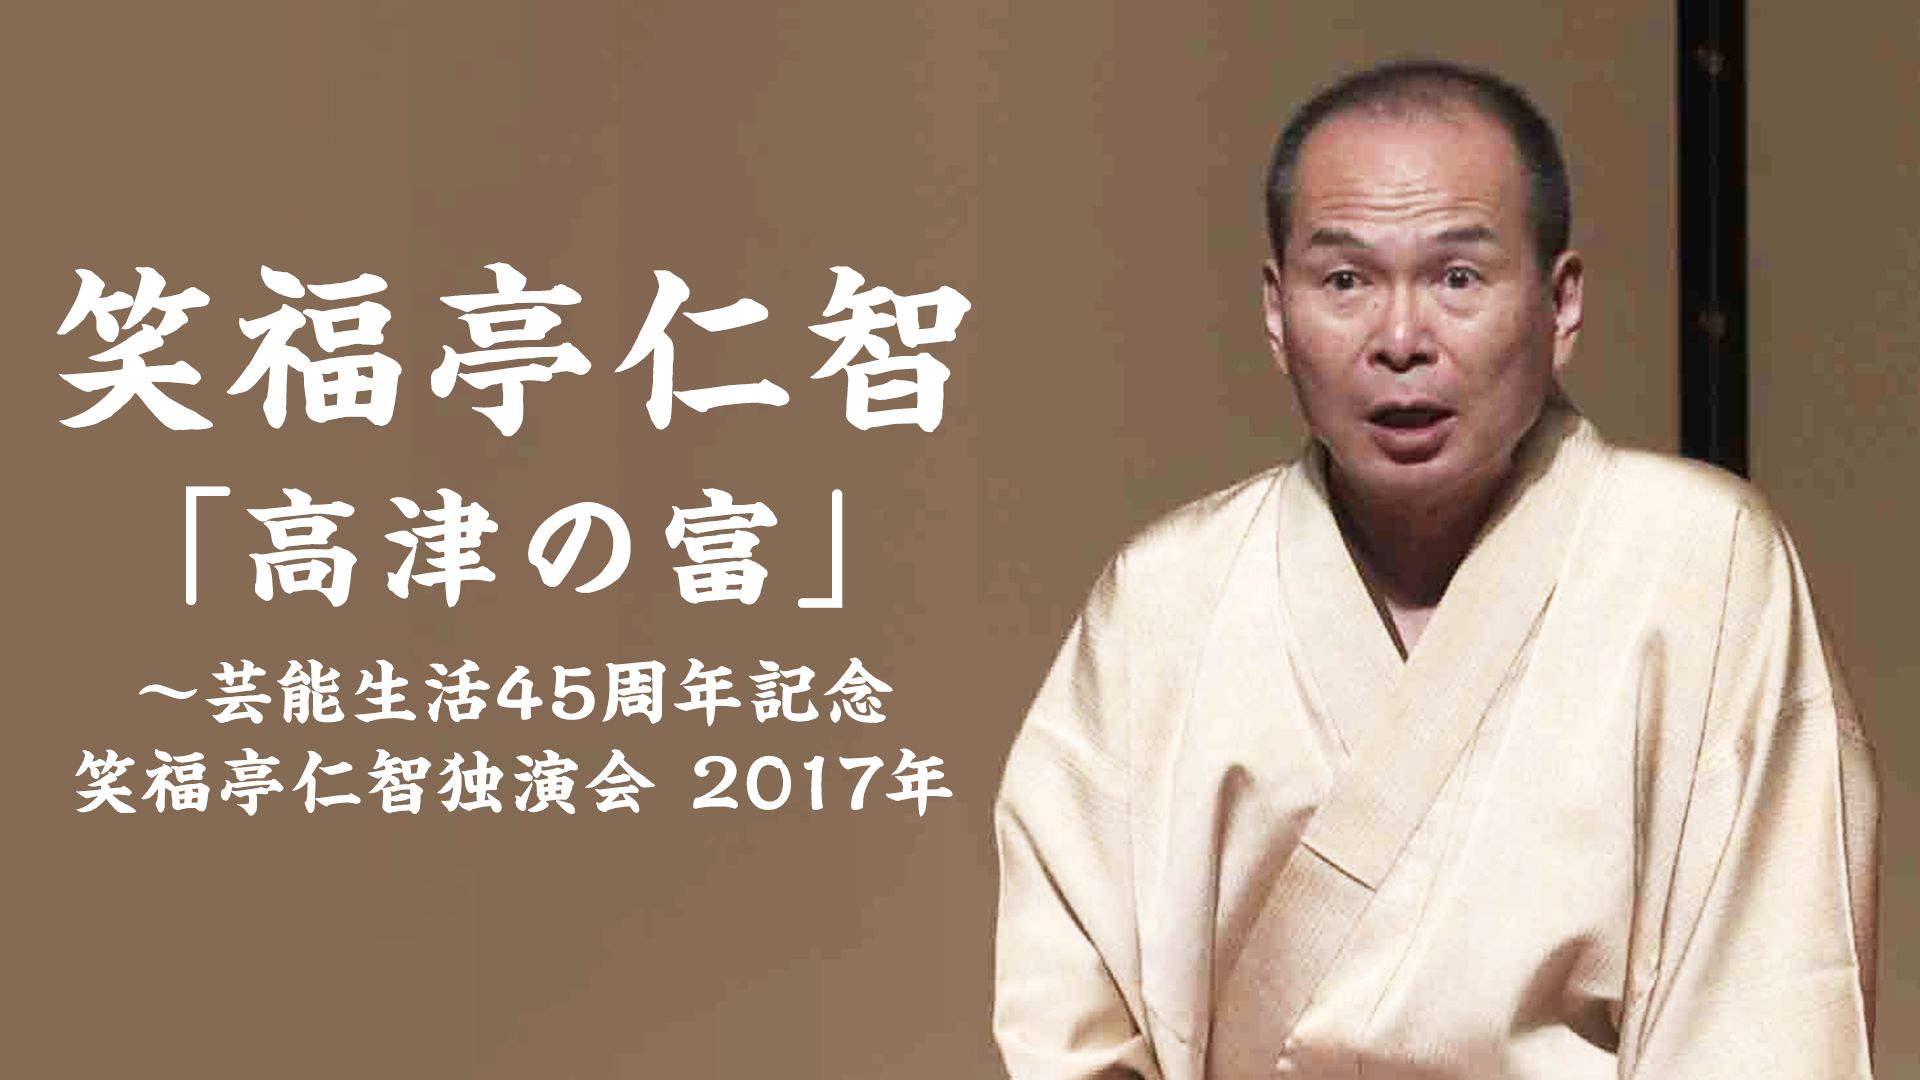 芸能生活45周年記念‐笑福亭仁智独演会